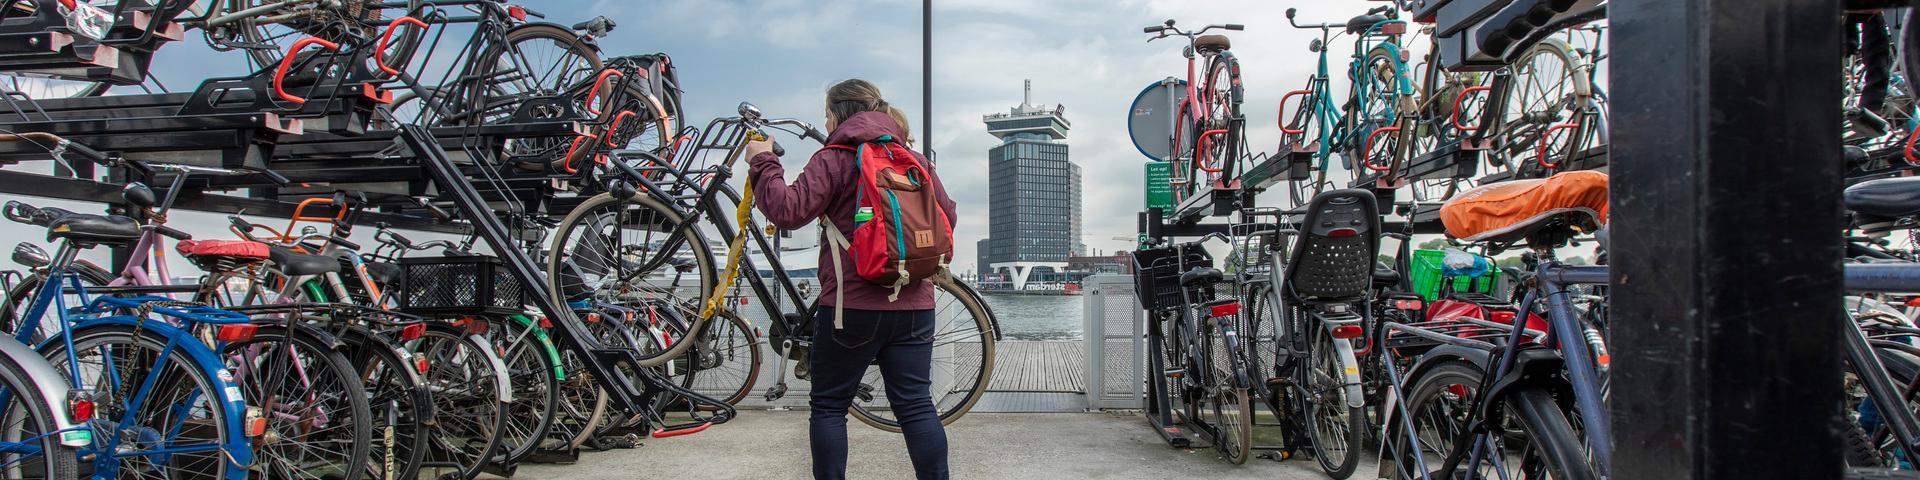 Vrouw zet fiets in rek stalling Amsterdam CS